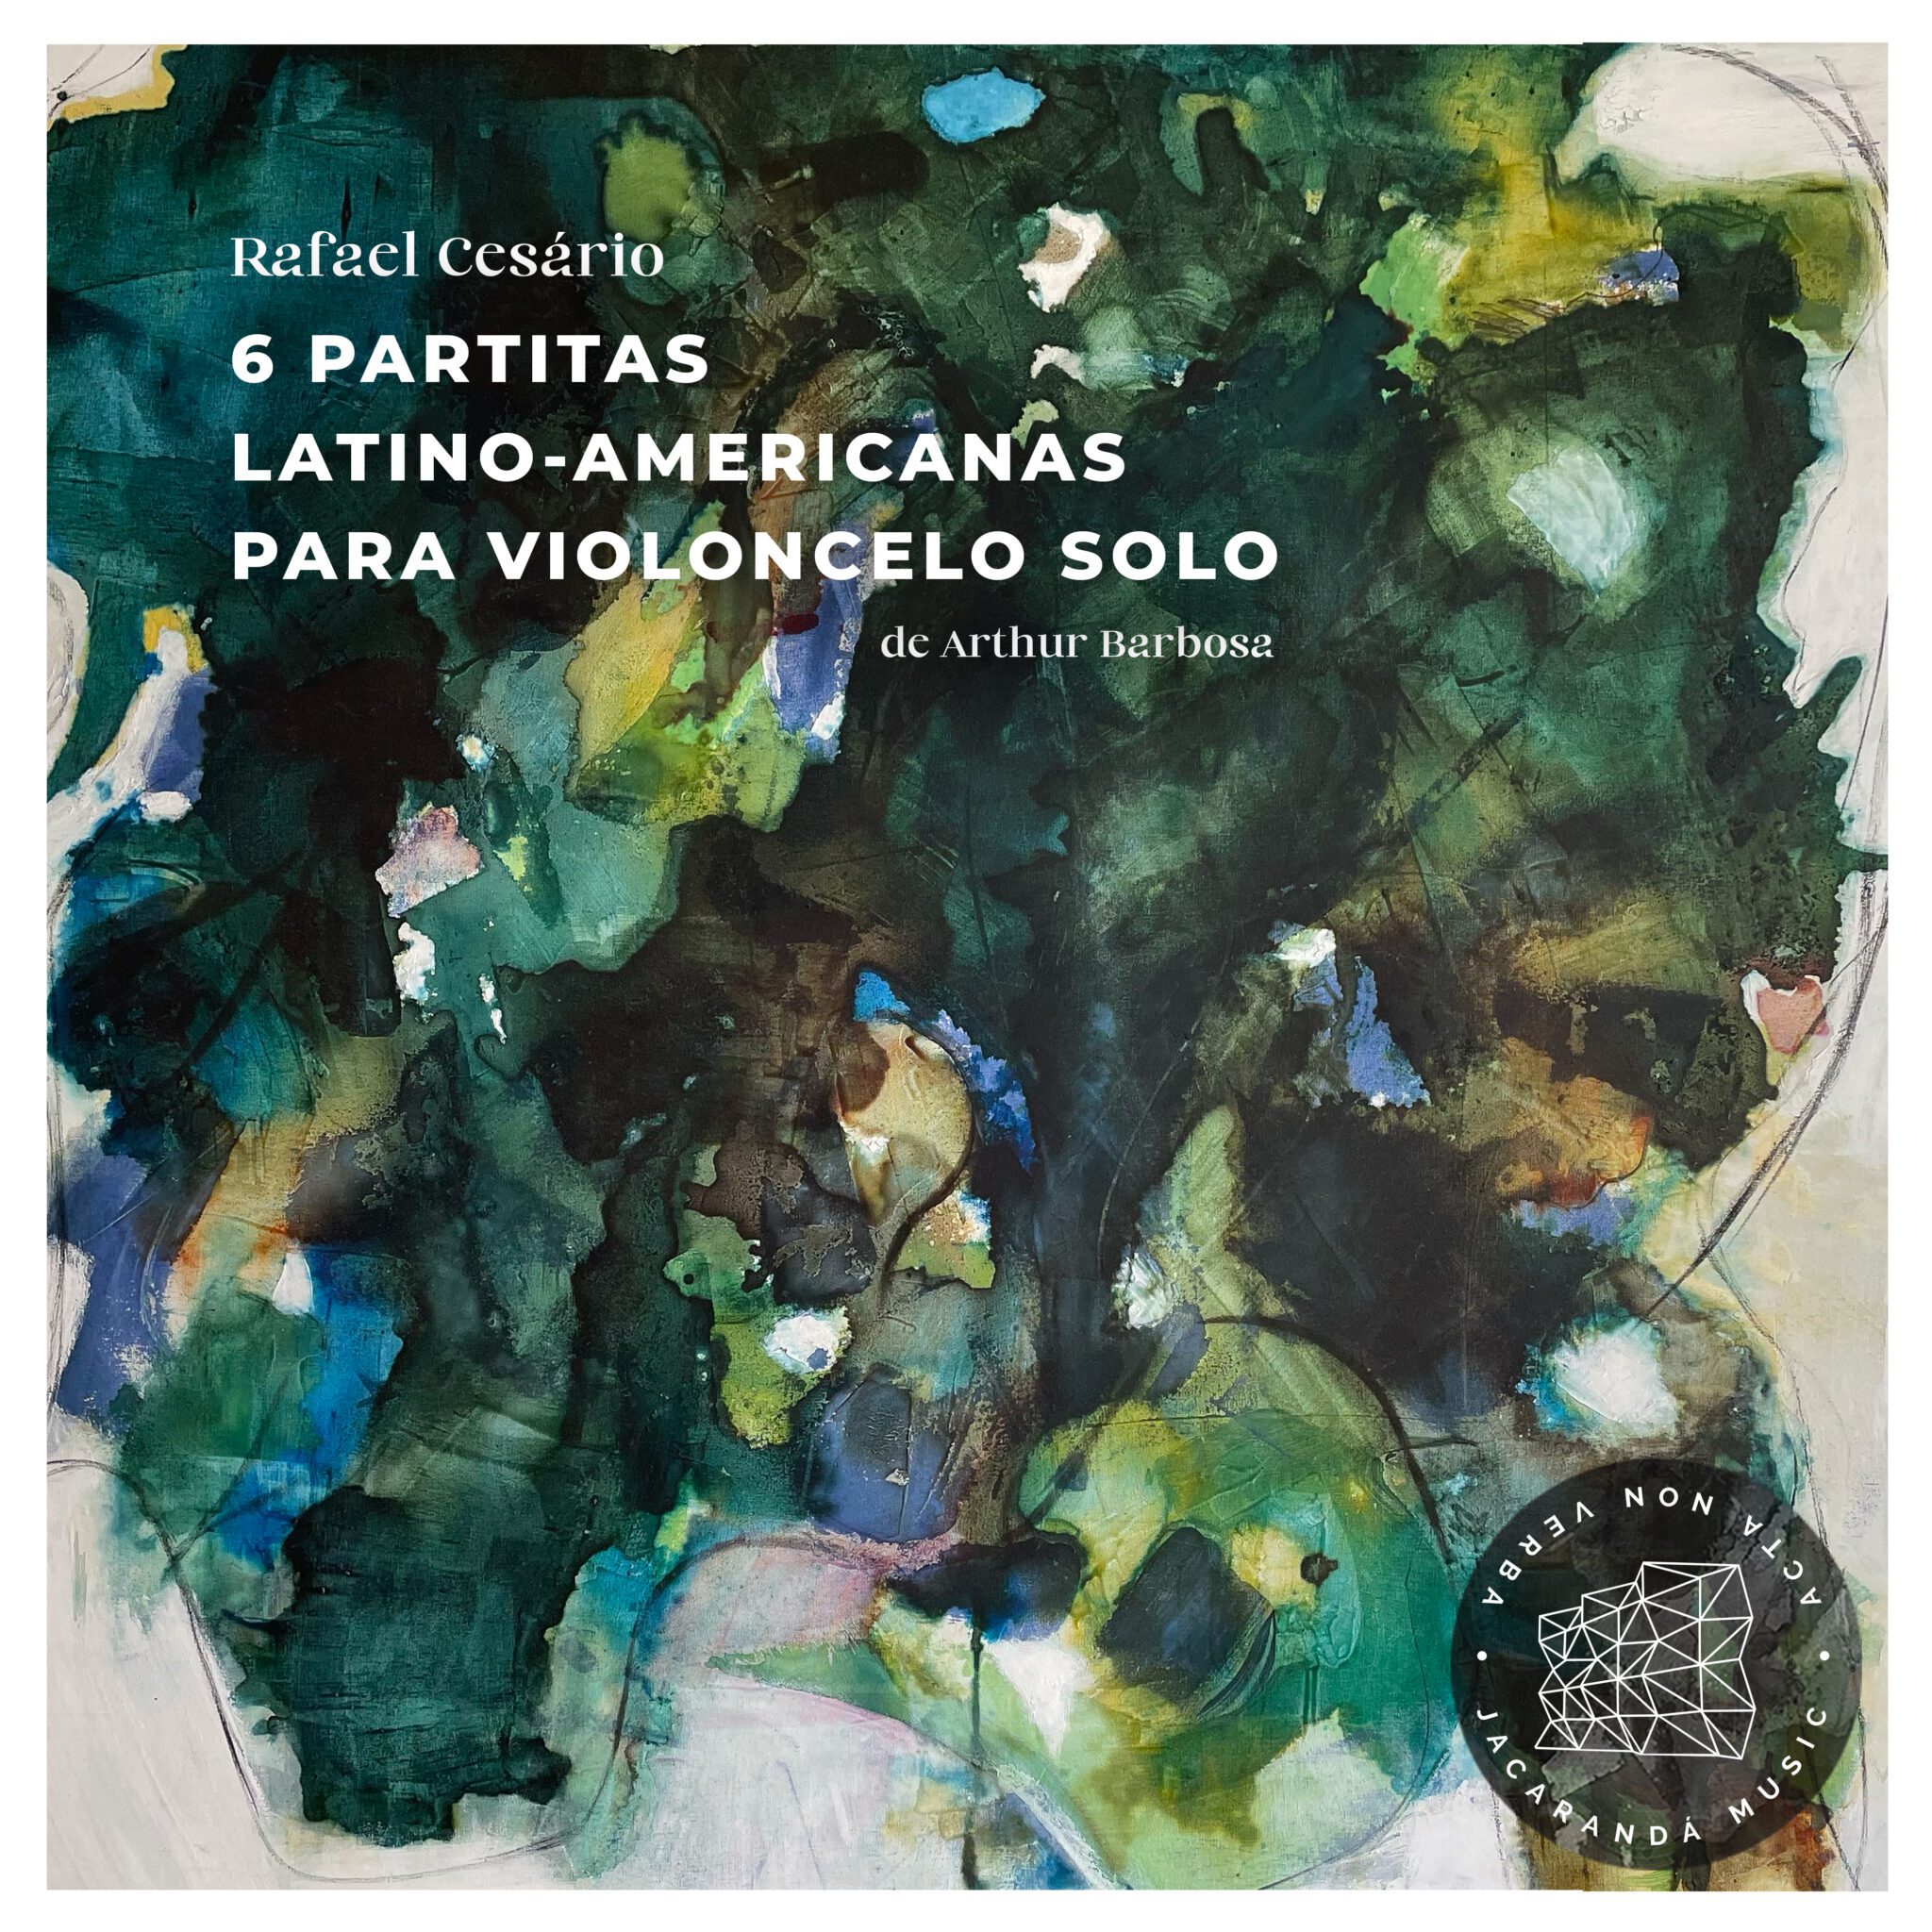 6 Partitas Latino Americanas para Violoncelo Solo - Rafael Cesa?rio - Arthur Barbosa